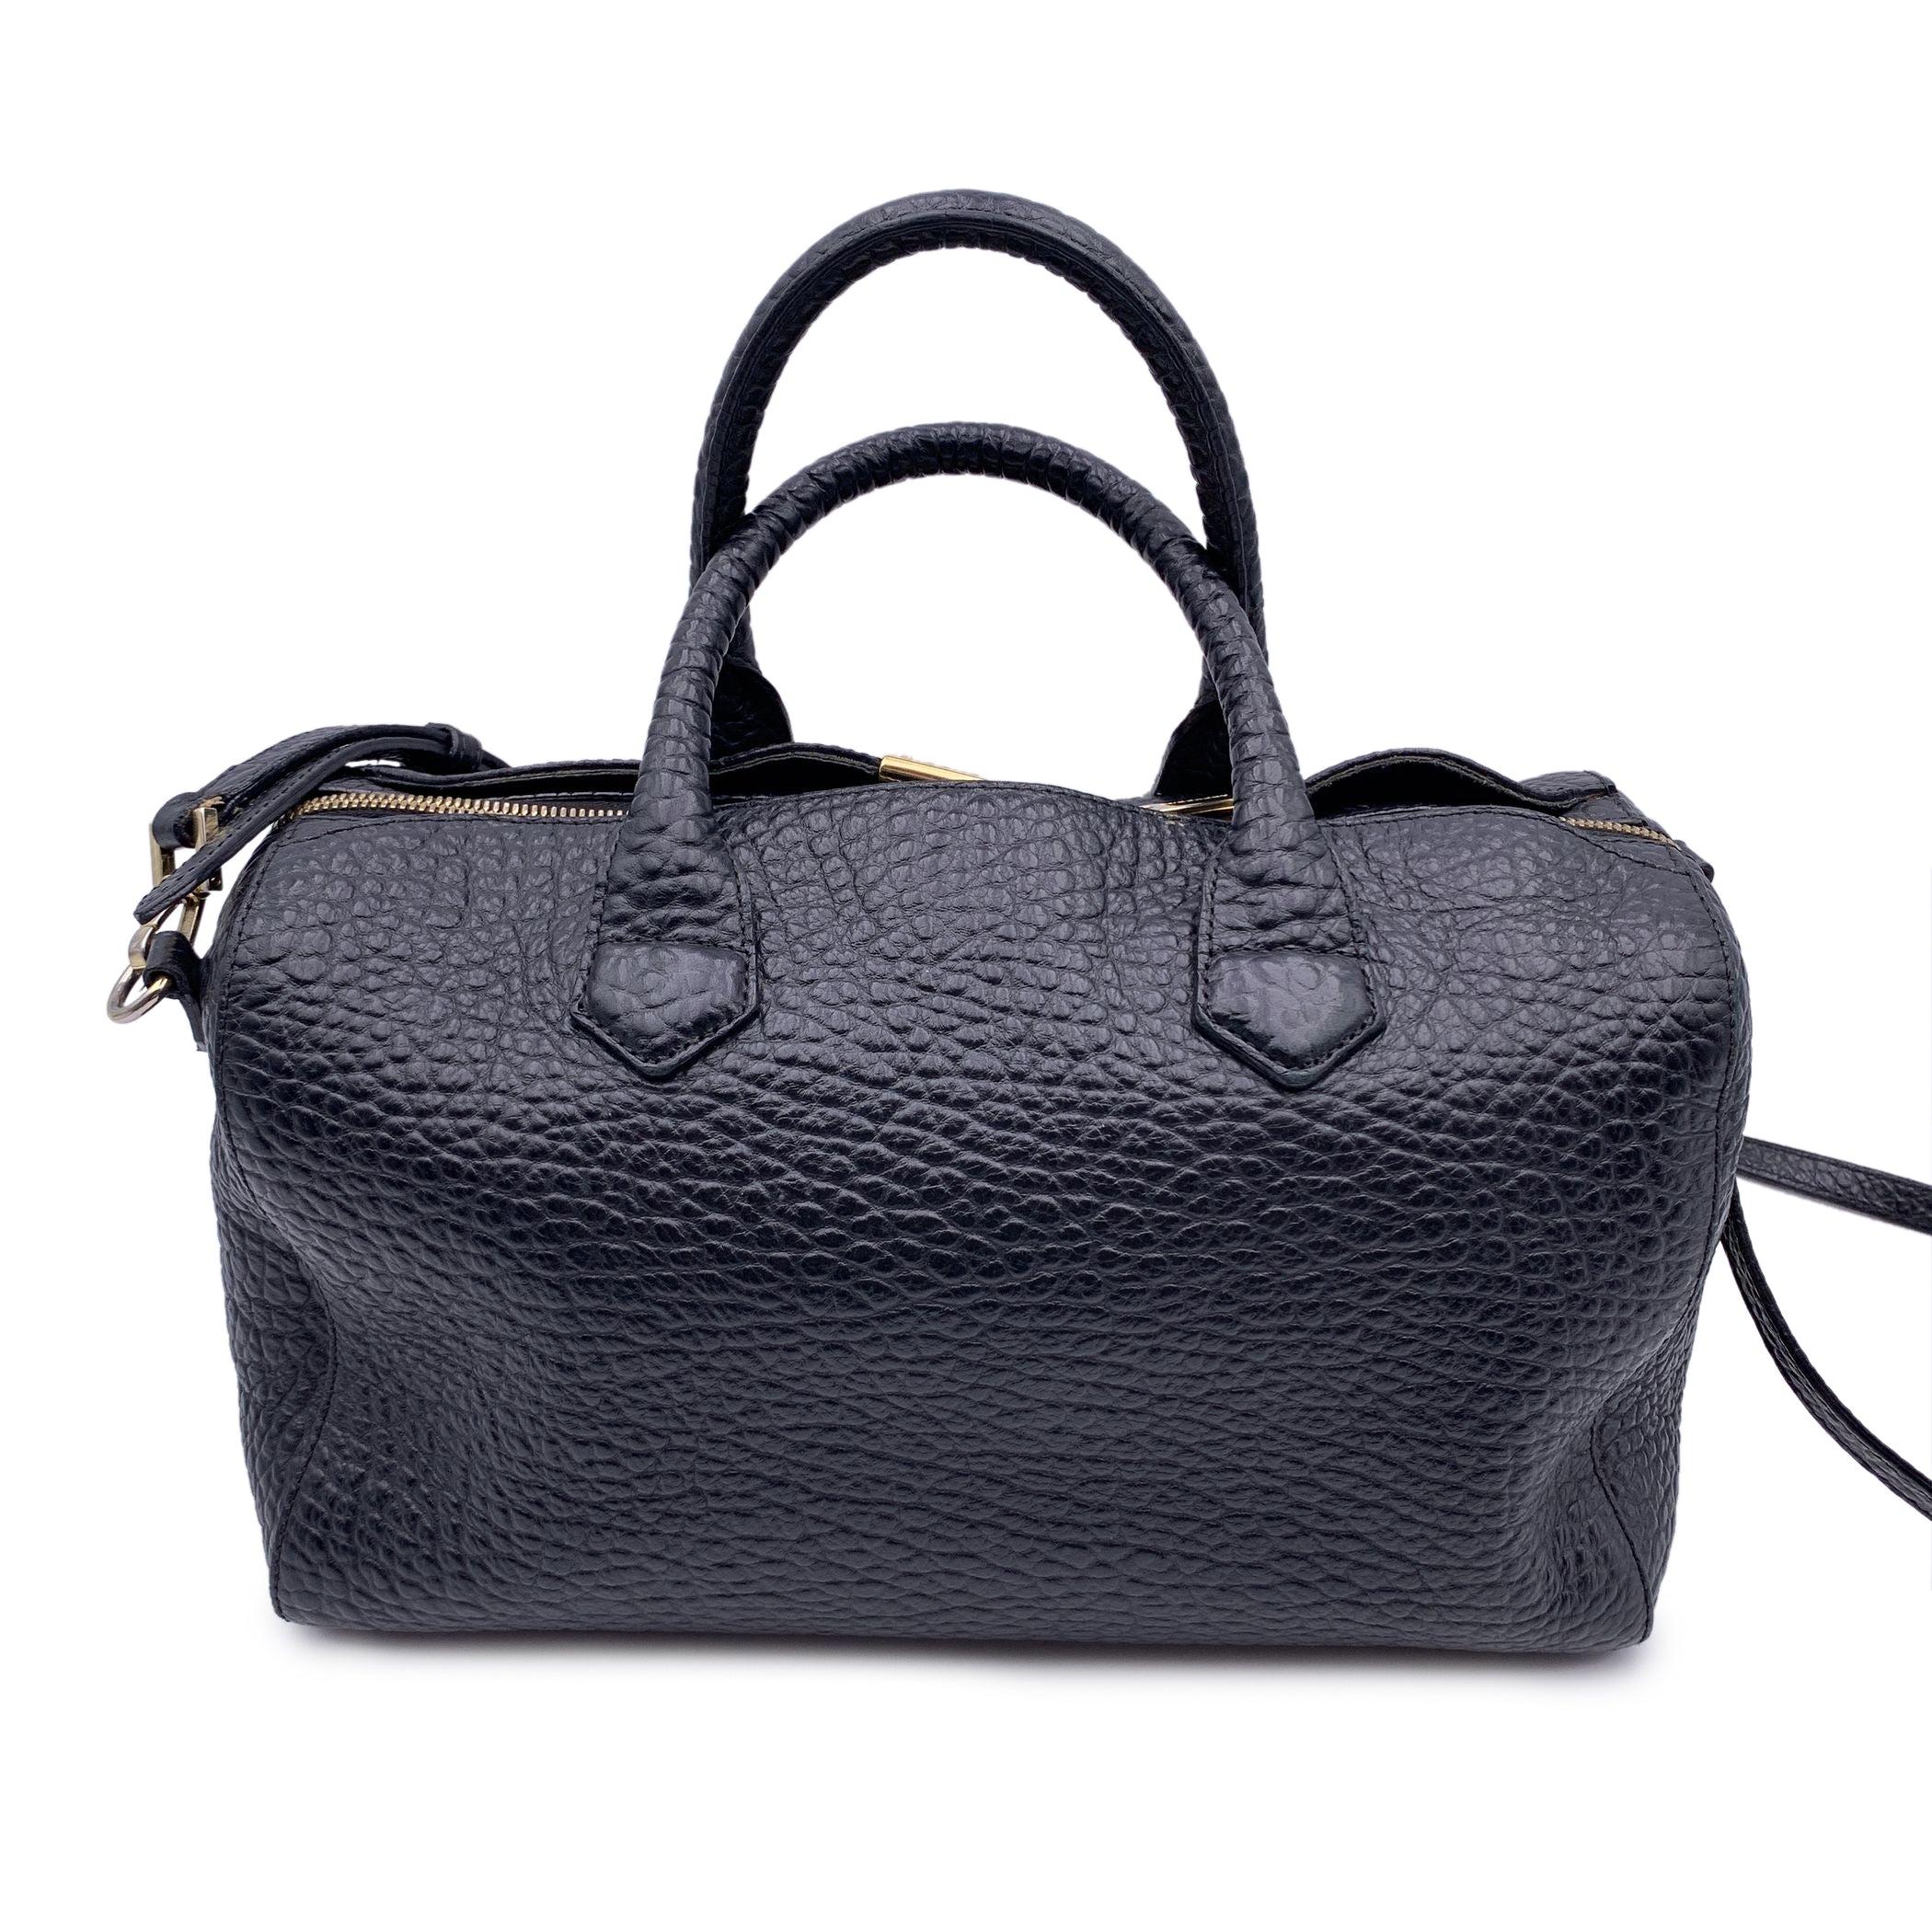 Burberry Black Pebbled Leather Handbag Boston Bag with Strap Excellent état à Rome, Rome